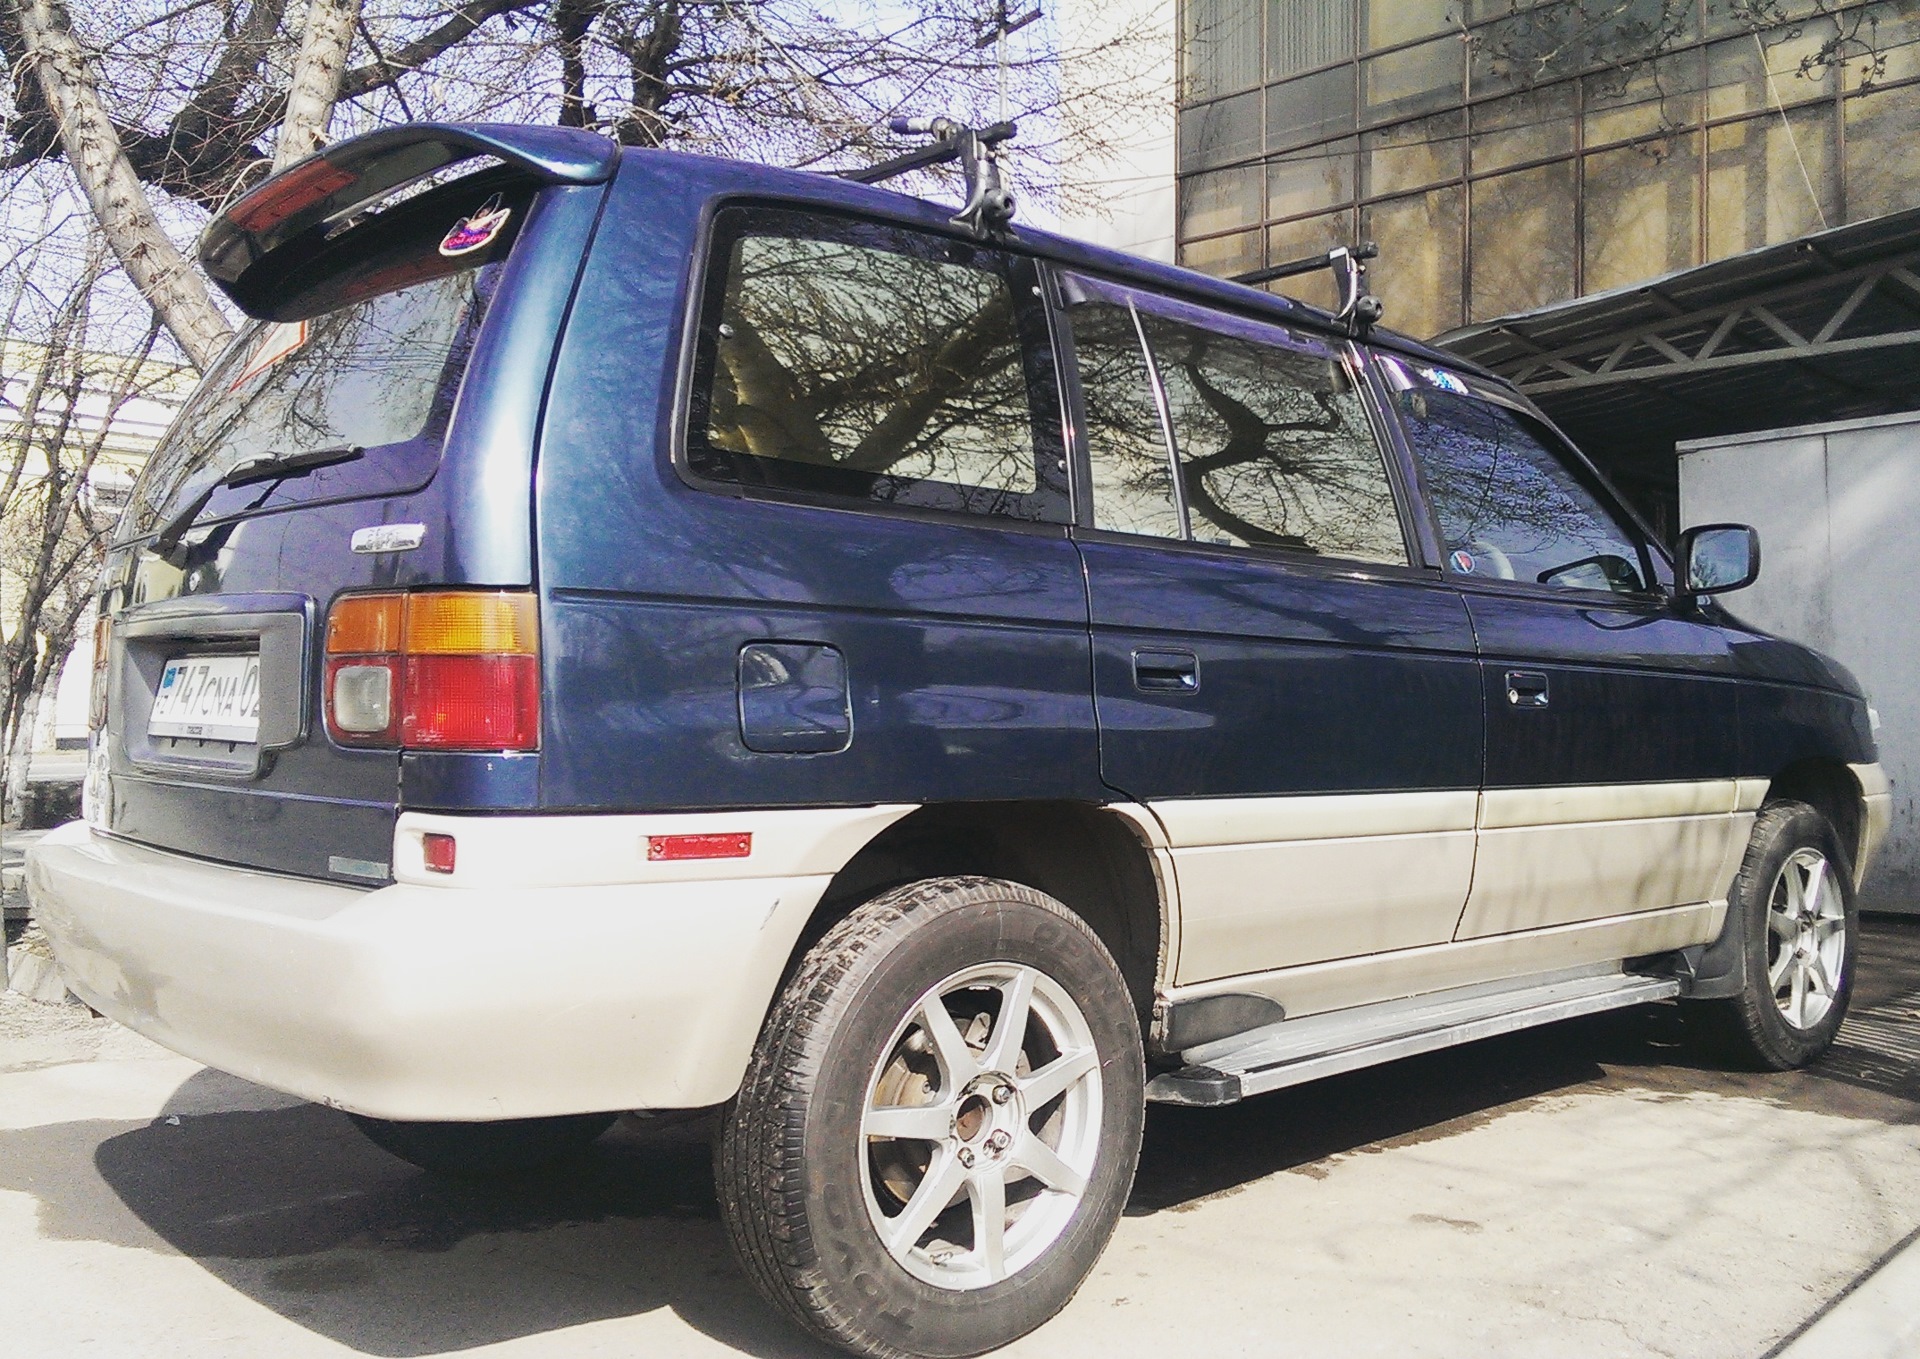 Мазда мпв 1996 год. Mazda MPV 1996. Mazda MPV 1 1996. Мазда МПВ 1996 год 2.5 дизель. Мазда МПВ 1996 года дизель.